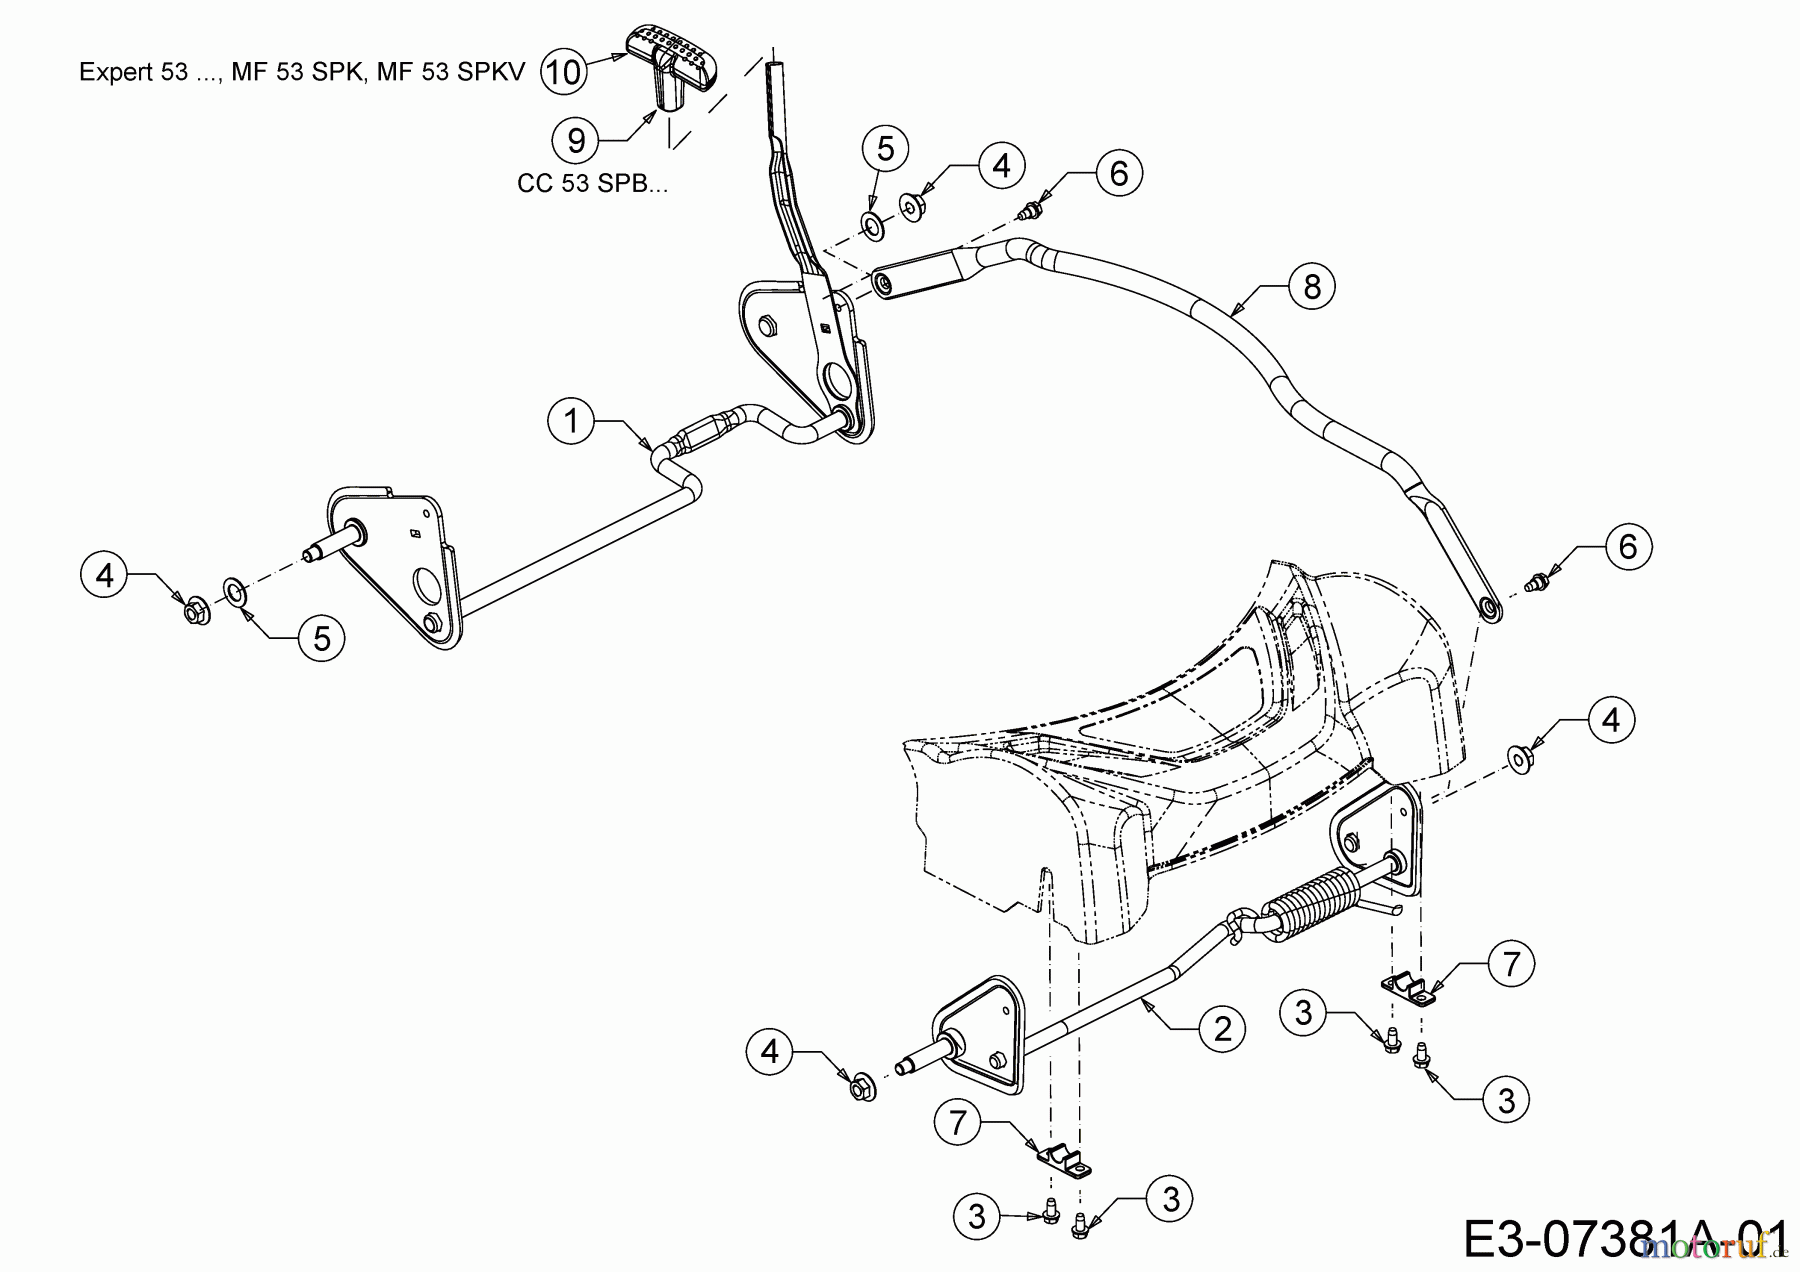  Wolf-Garten Petrol mower self propelled Expert 53 BA 12A-Q56K650  (2013) Axles, Height adjustment